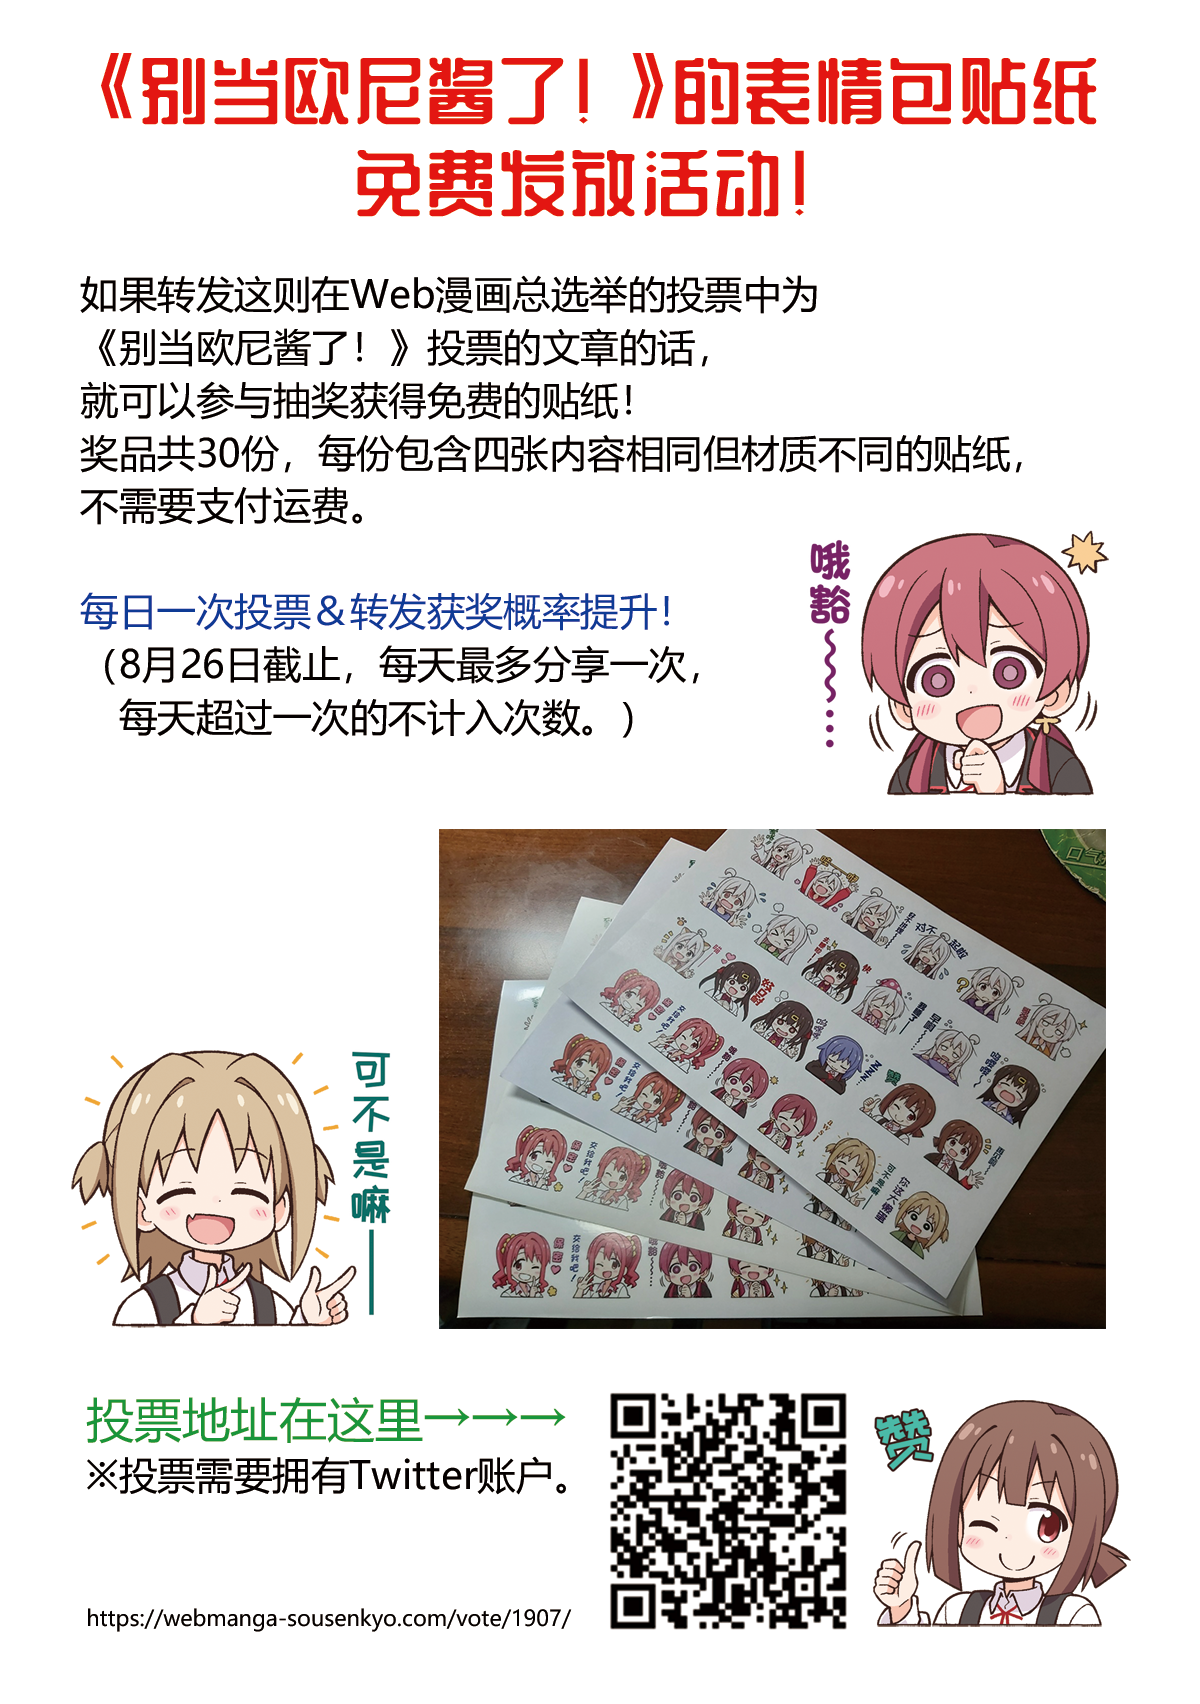 猫豆腐official 哔哩哔哩相簿